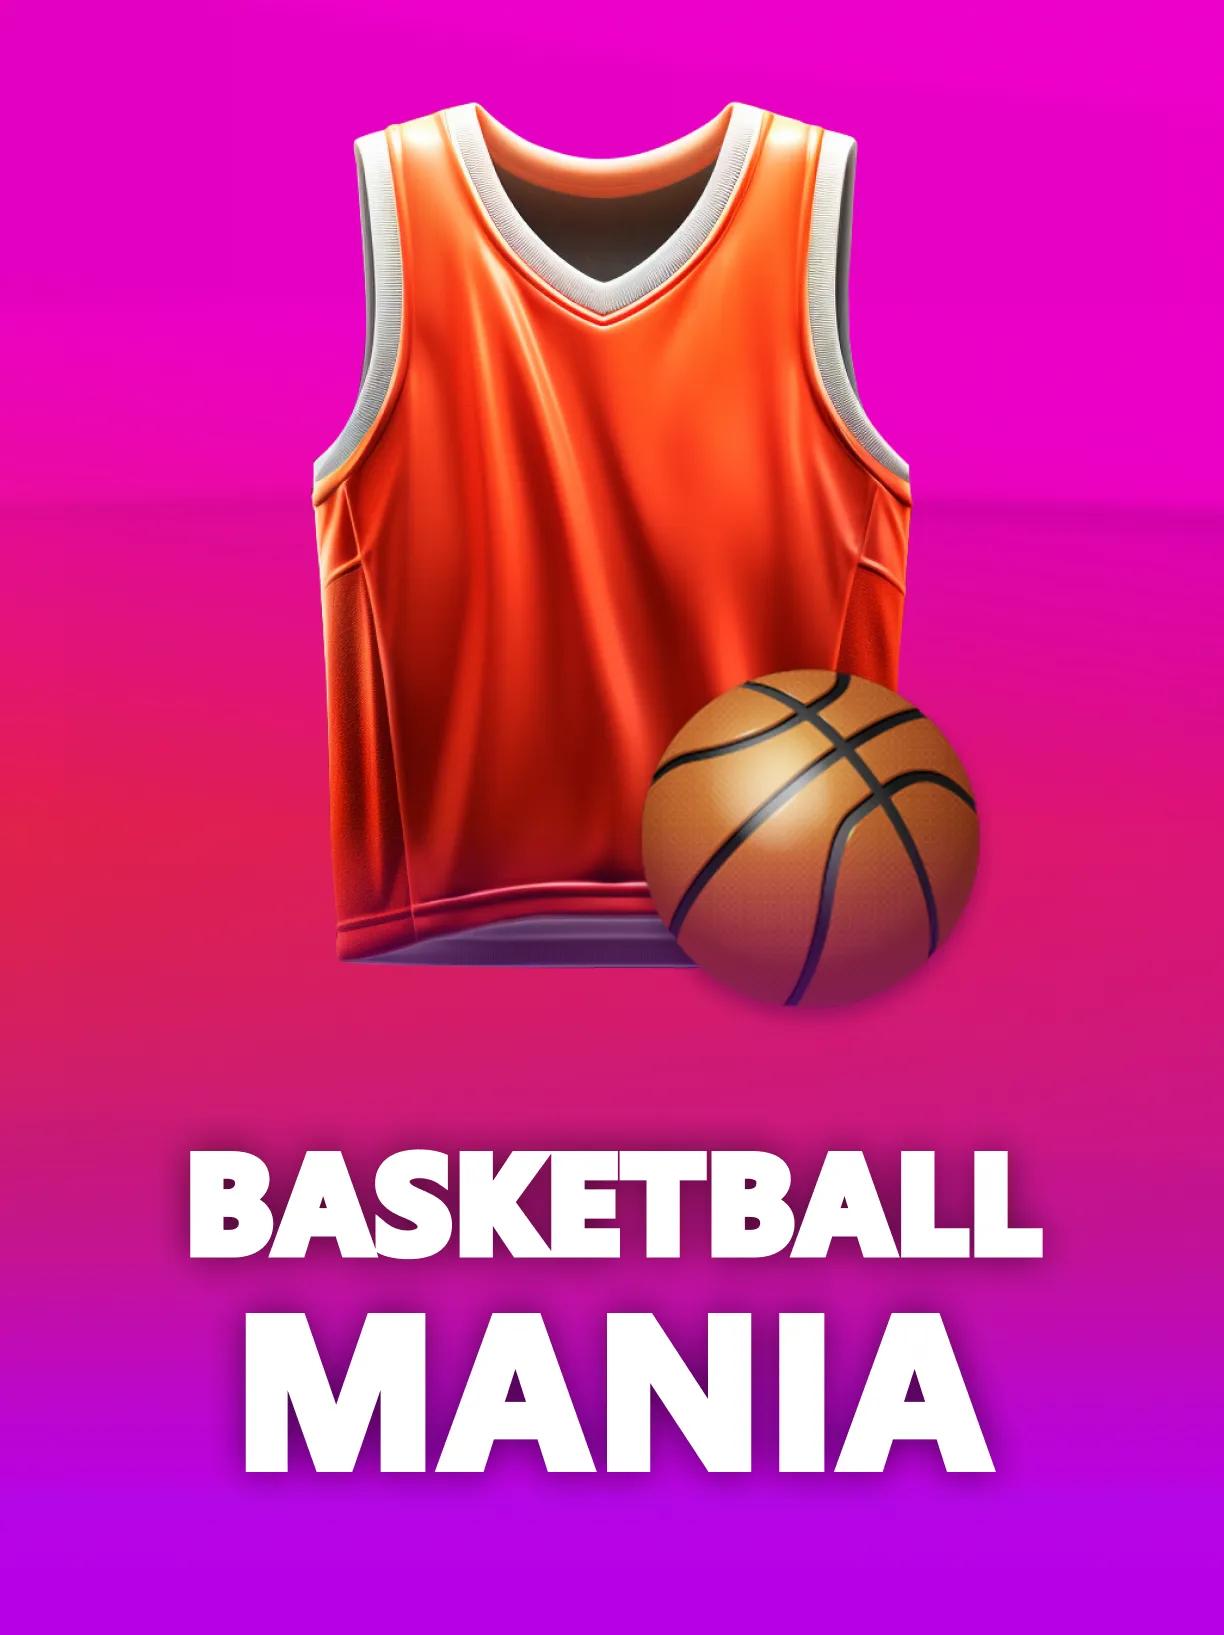 ug_Basketball_Mania_square.webp